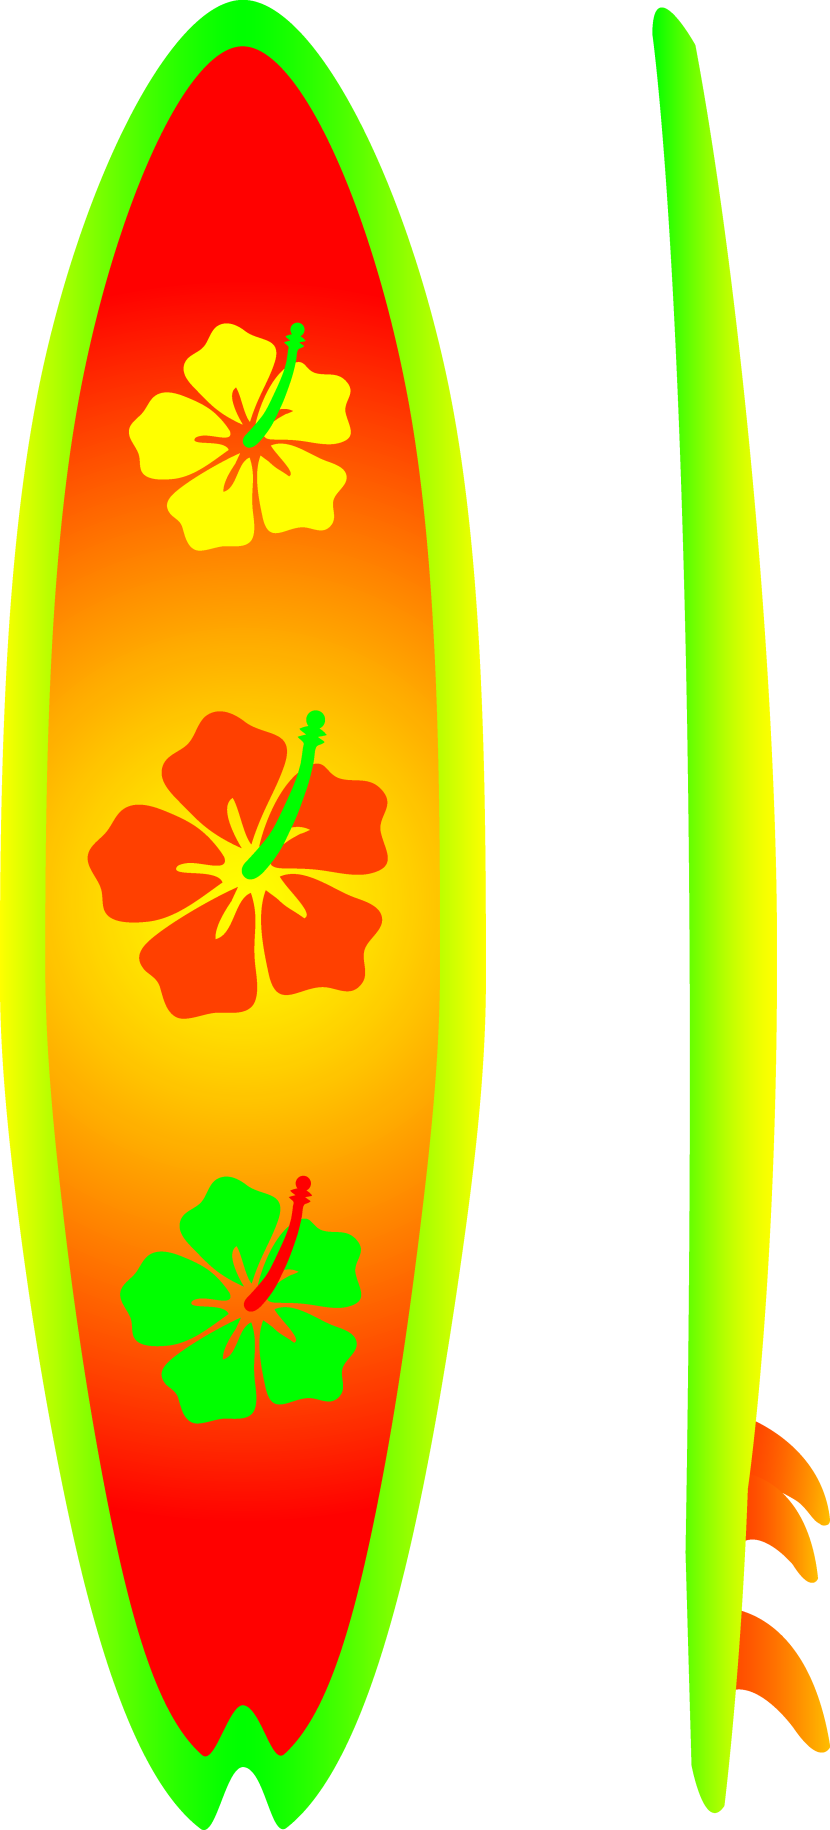 Cartoon Surfboards - ClipArt Best